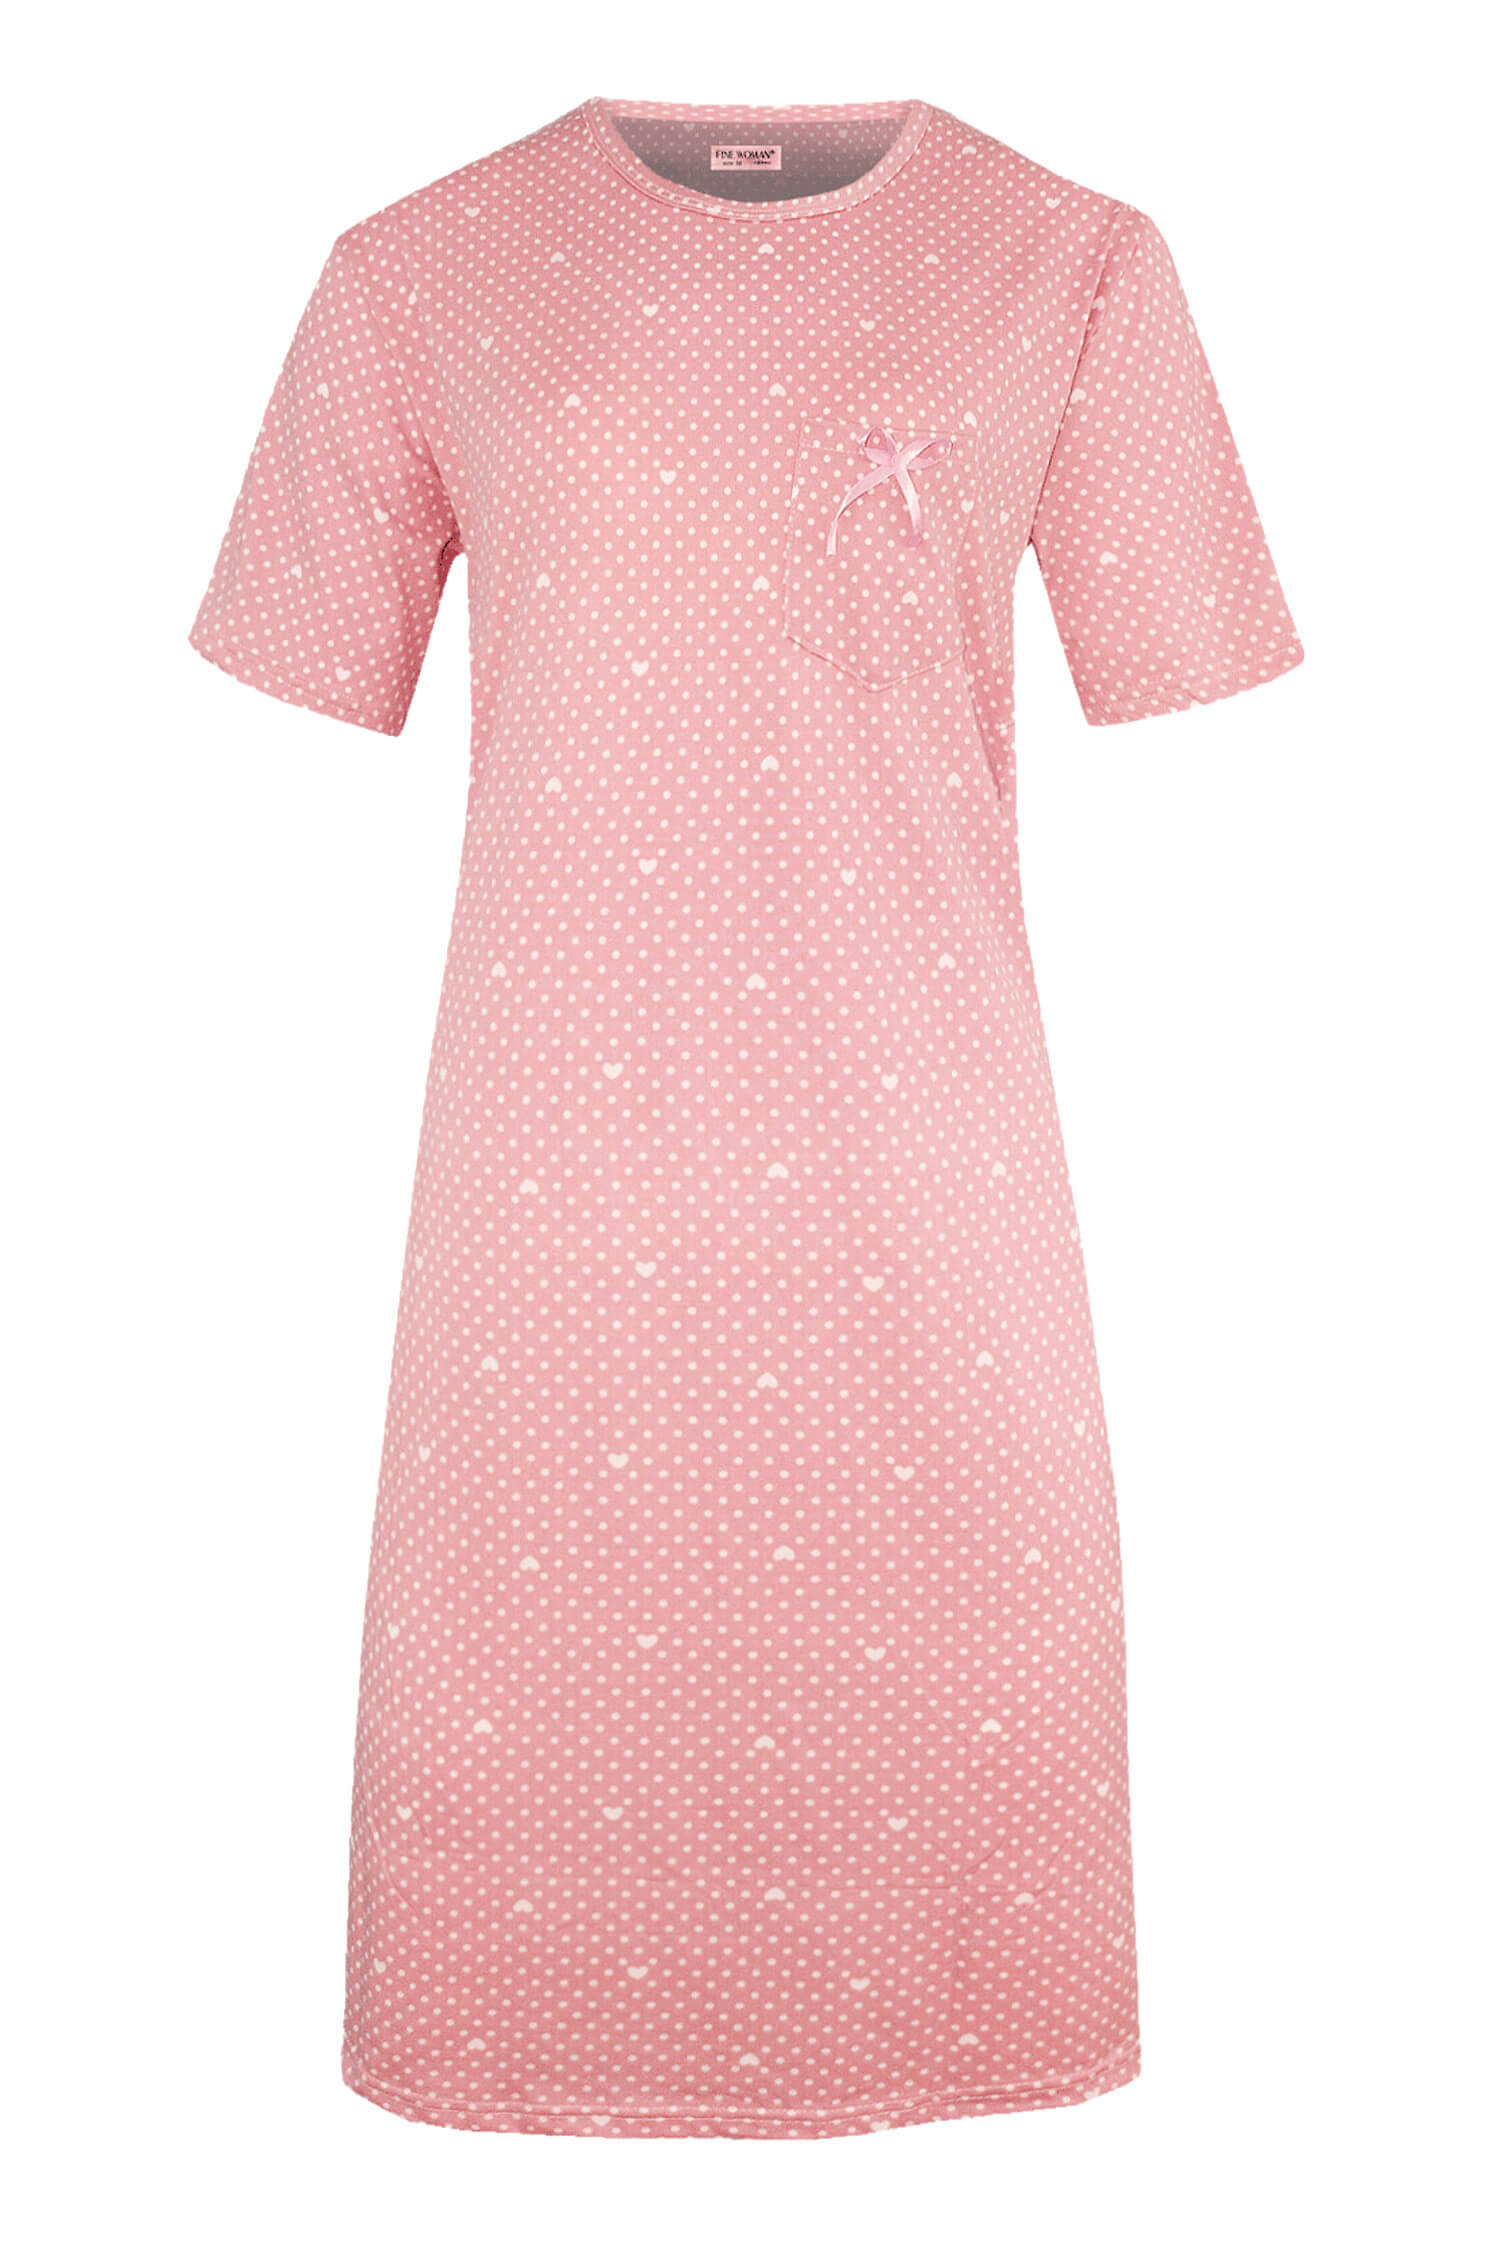 Danuška dámská noční košile s puntíky 6528 XXL světle růžová